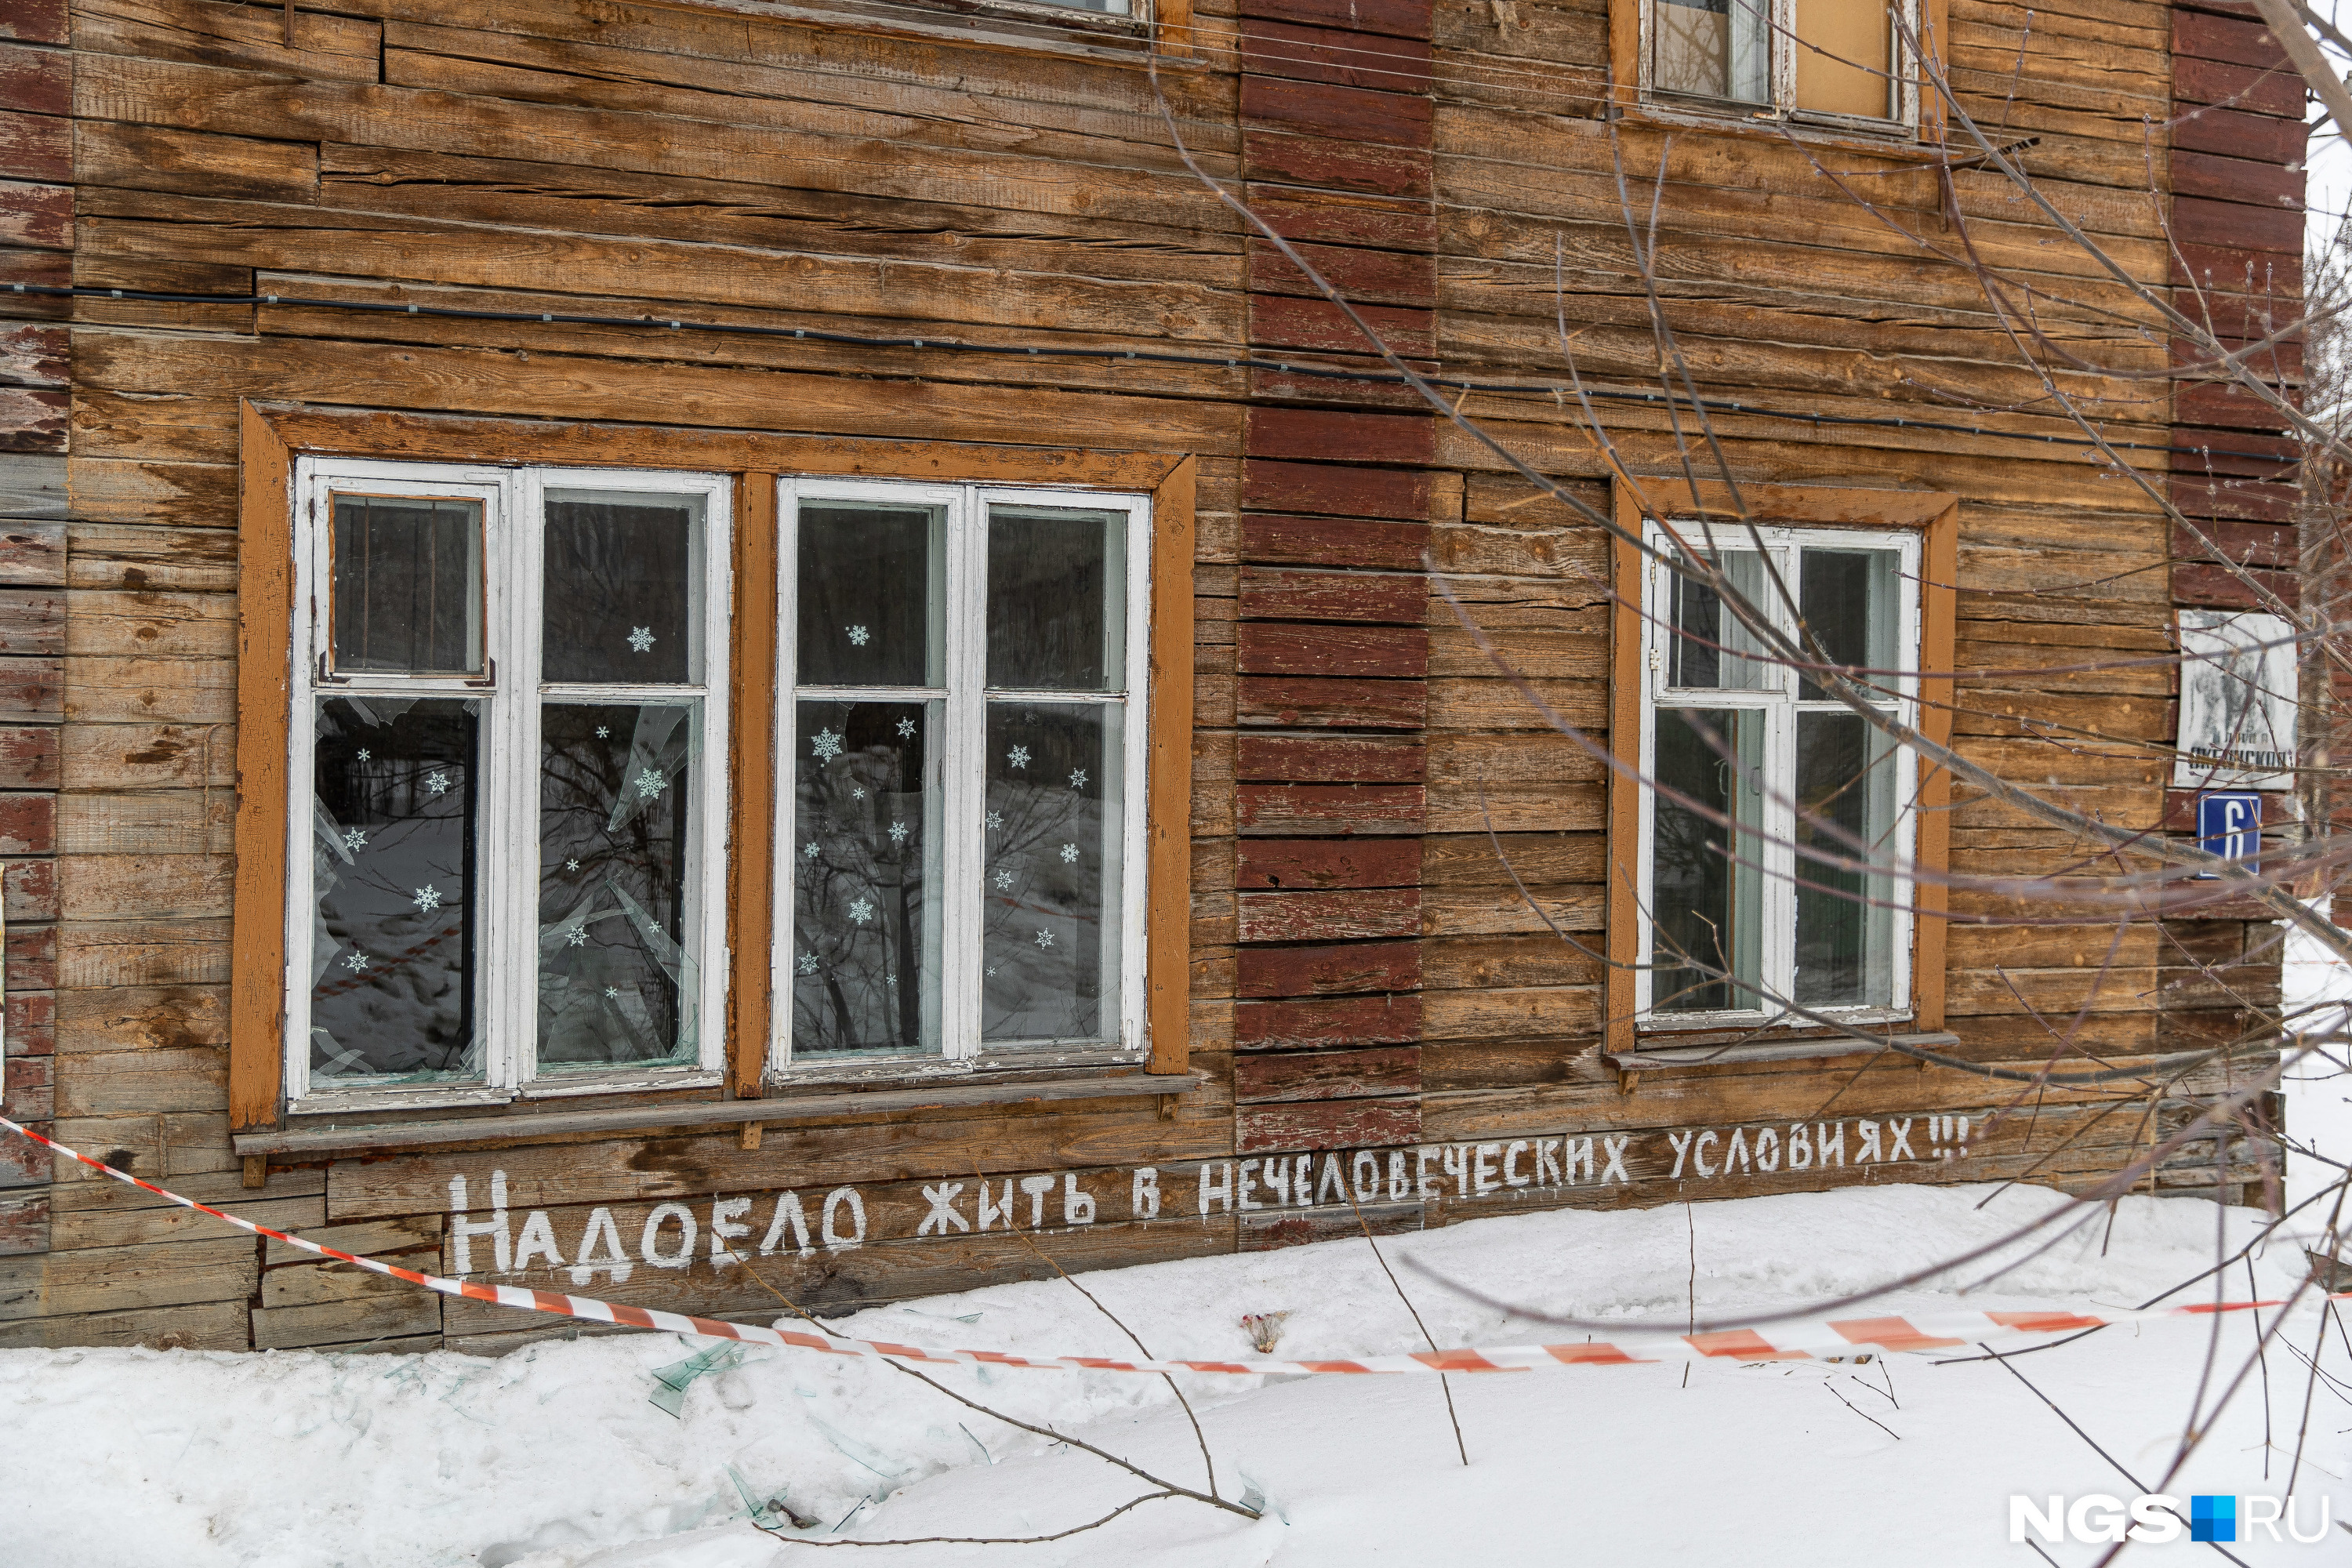 В Советском районе еще пять территорий с аварийными домами, но жилья на замену у мэрии здесь нет — только в Кировском и Октябрьском районах